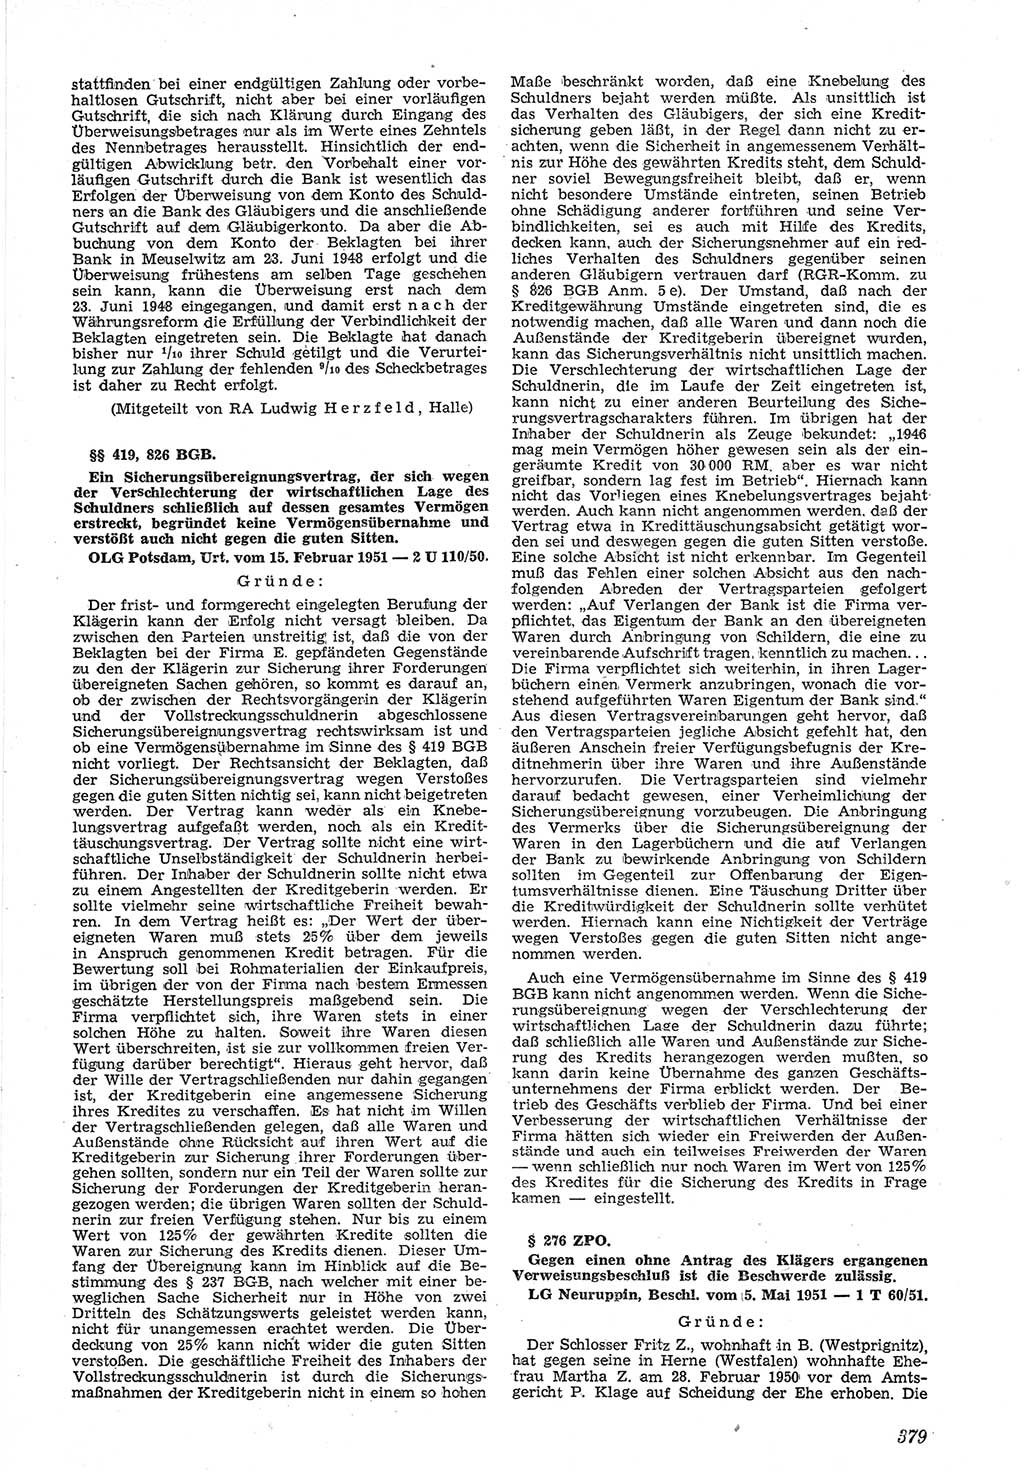 Neue Justiz (NJ), Zeitschrift für Recht und Rechtswissenschaft [Deutsche Demokratische Republik (DDR)], 5. Jahrgang 1951, Seite 379 (NJ DDR 1951, S. 379)